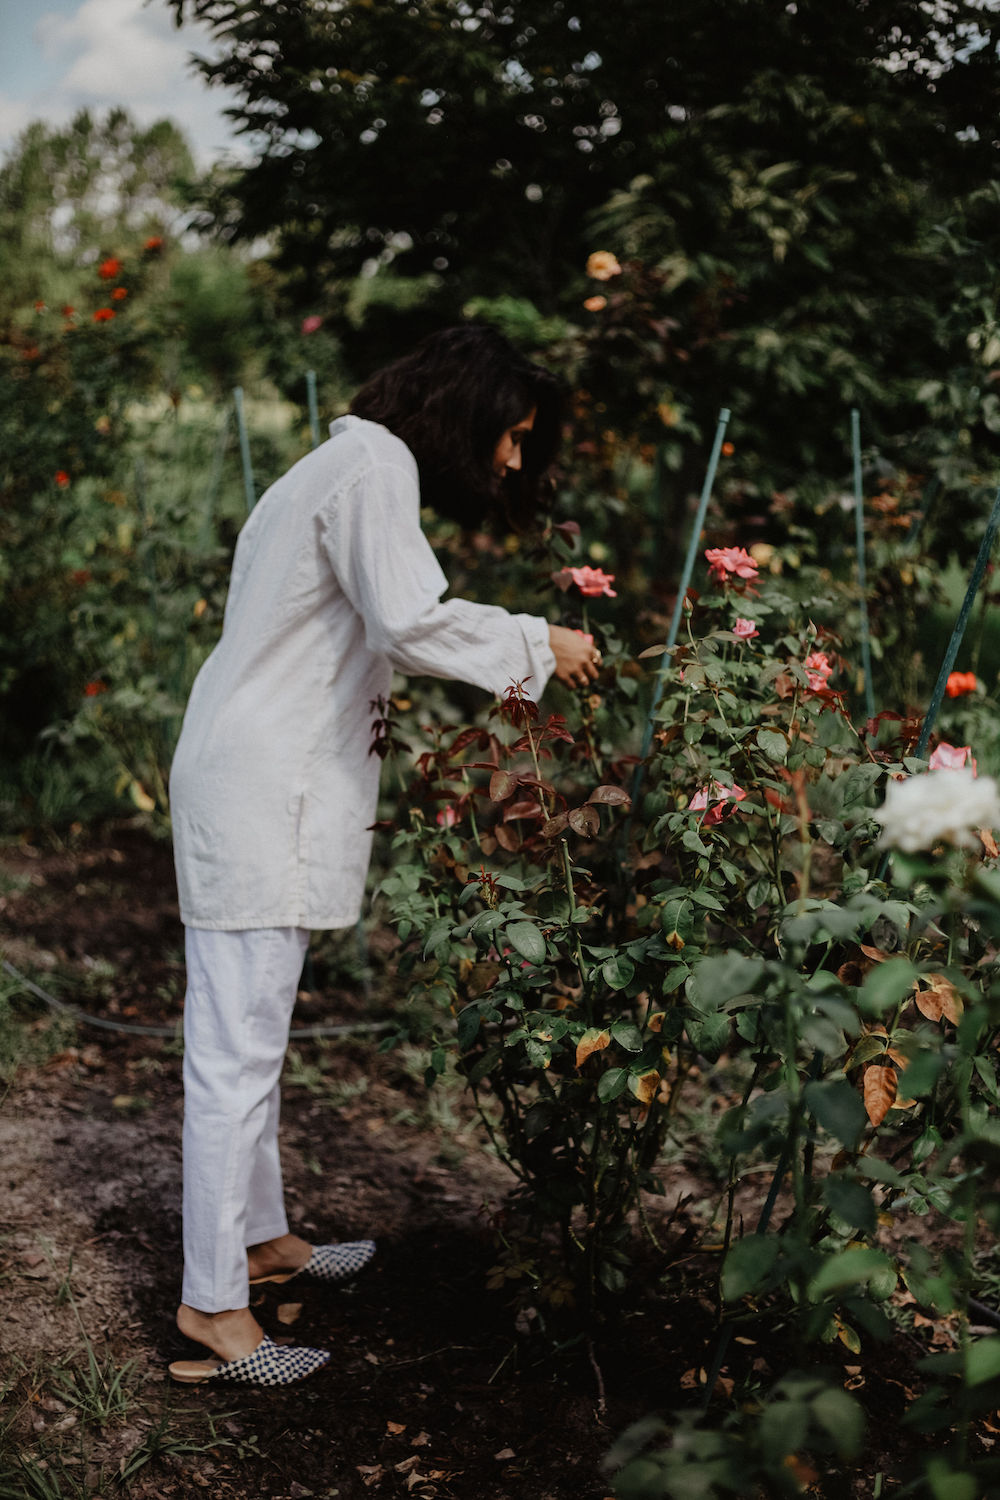 trishala bhansali picking roses